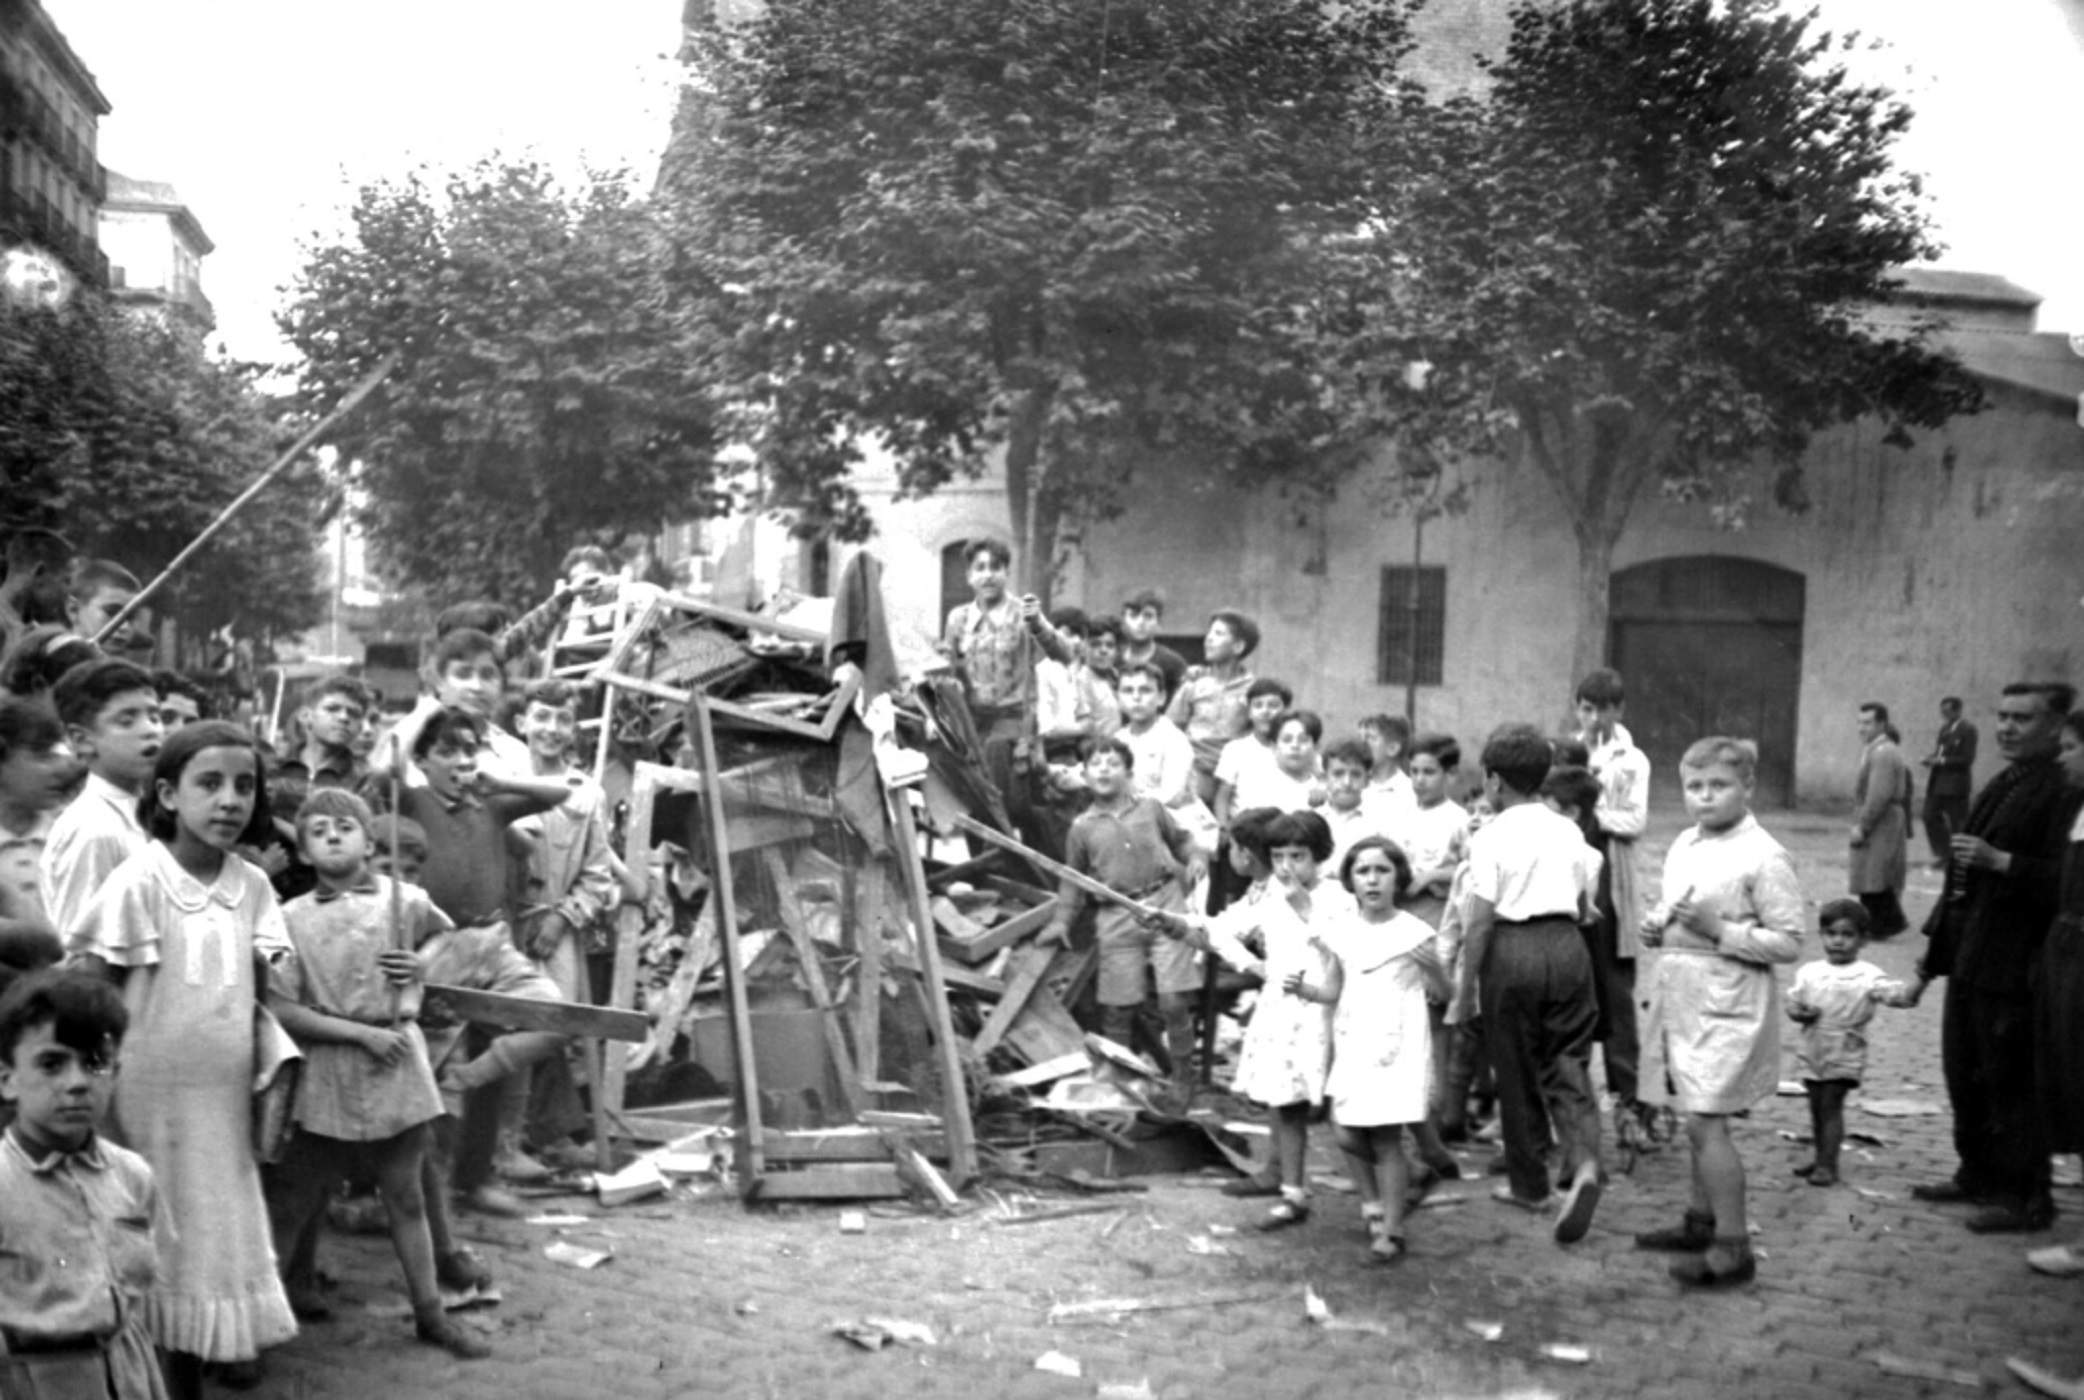 Nens preparant una foguera (Barcelona, circa 1940). Font Arxiu Nacional de Catalunya. Fons Brangulí